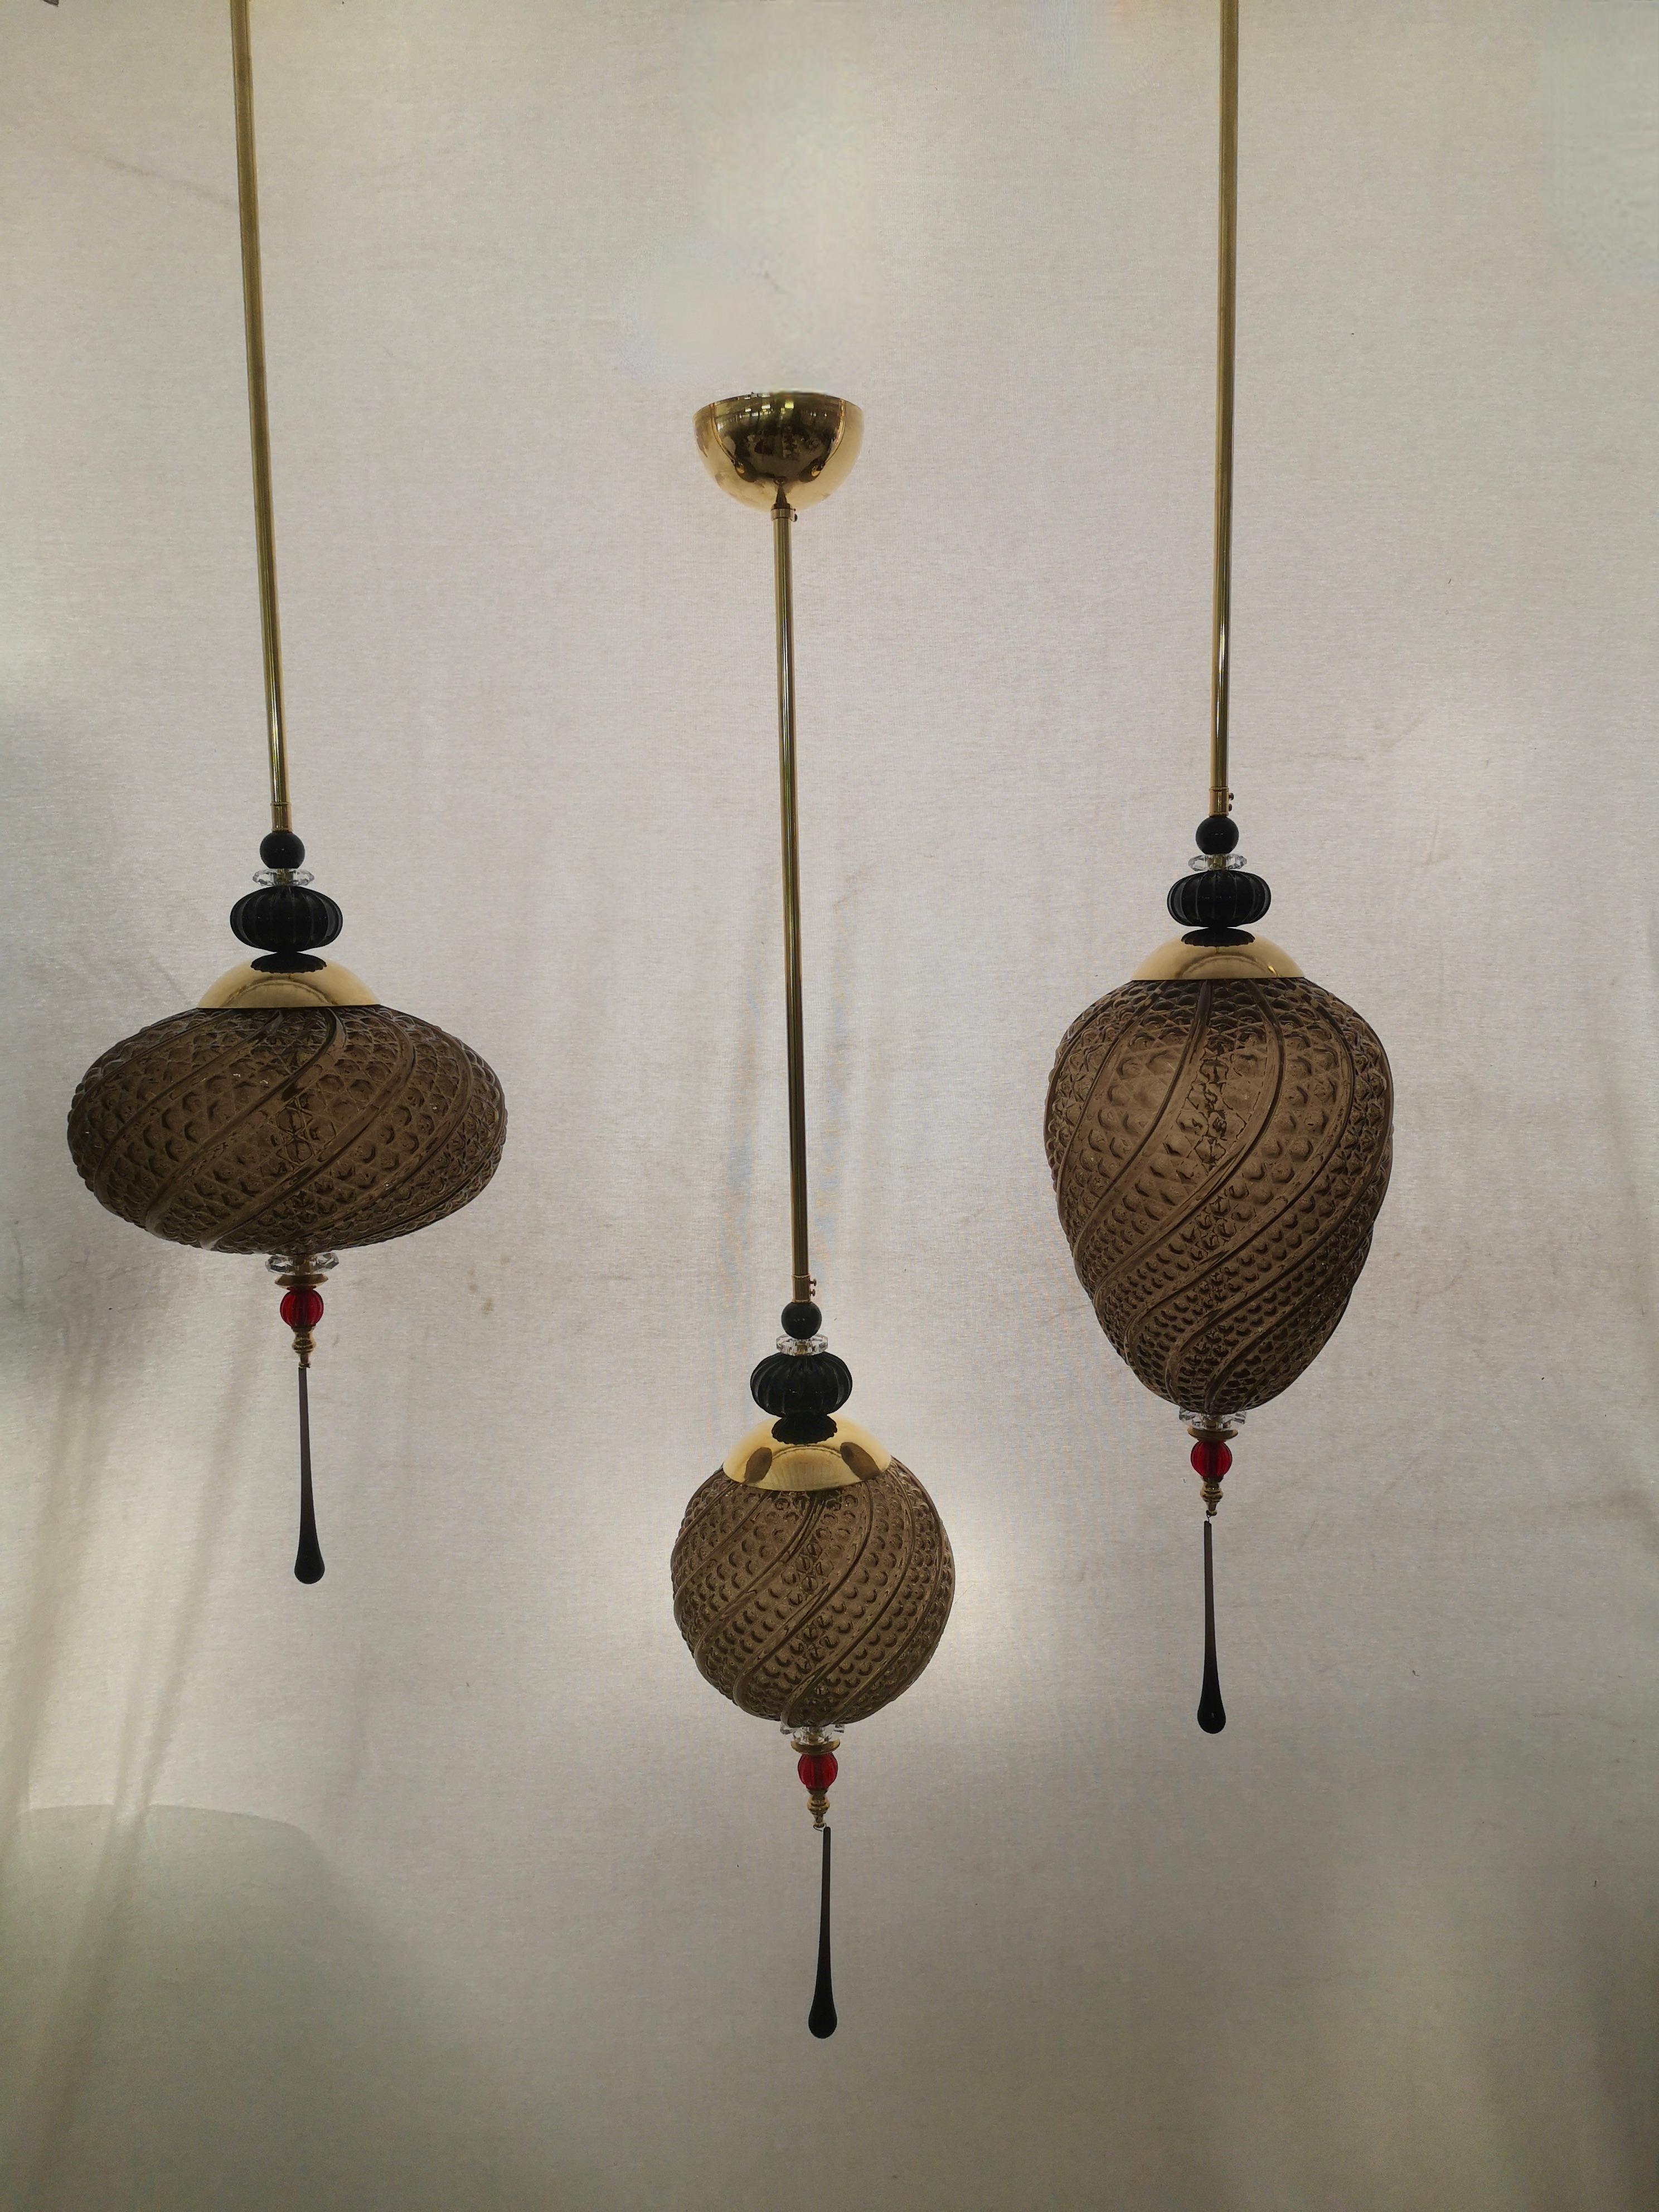 Précieuses lanternes en verre soufflé de Murano, leurs couleurs sont uniques, allant de la couleur fumée au noir en passant par le rouge. Objet très élégant et raffiné, il peut être placé à plusieurs endroits de la maison, par exemple en les